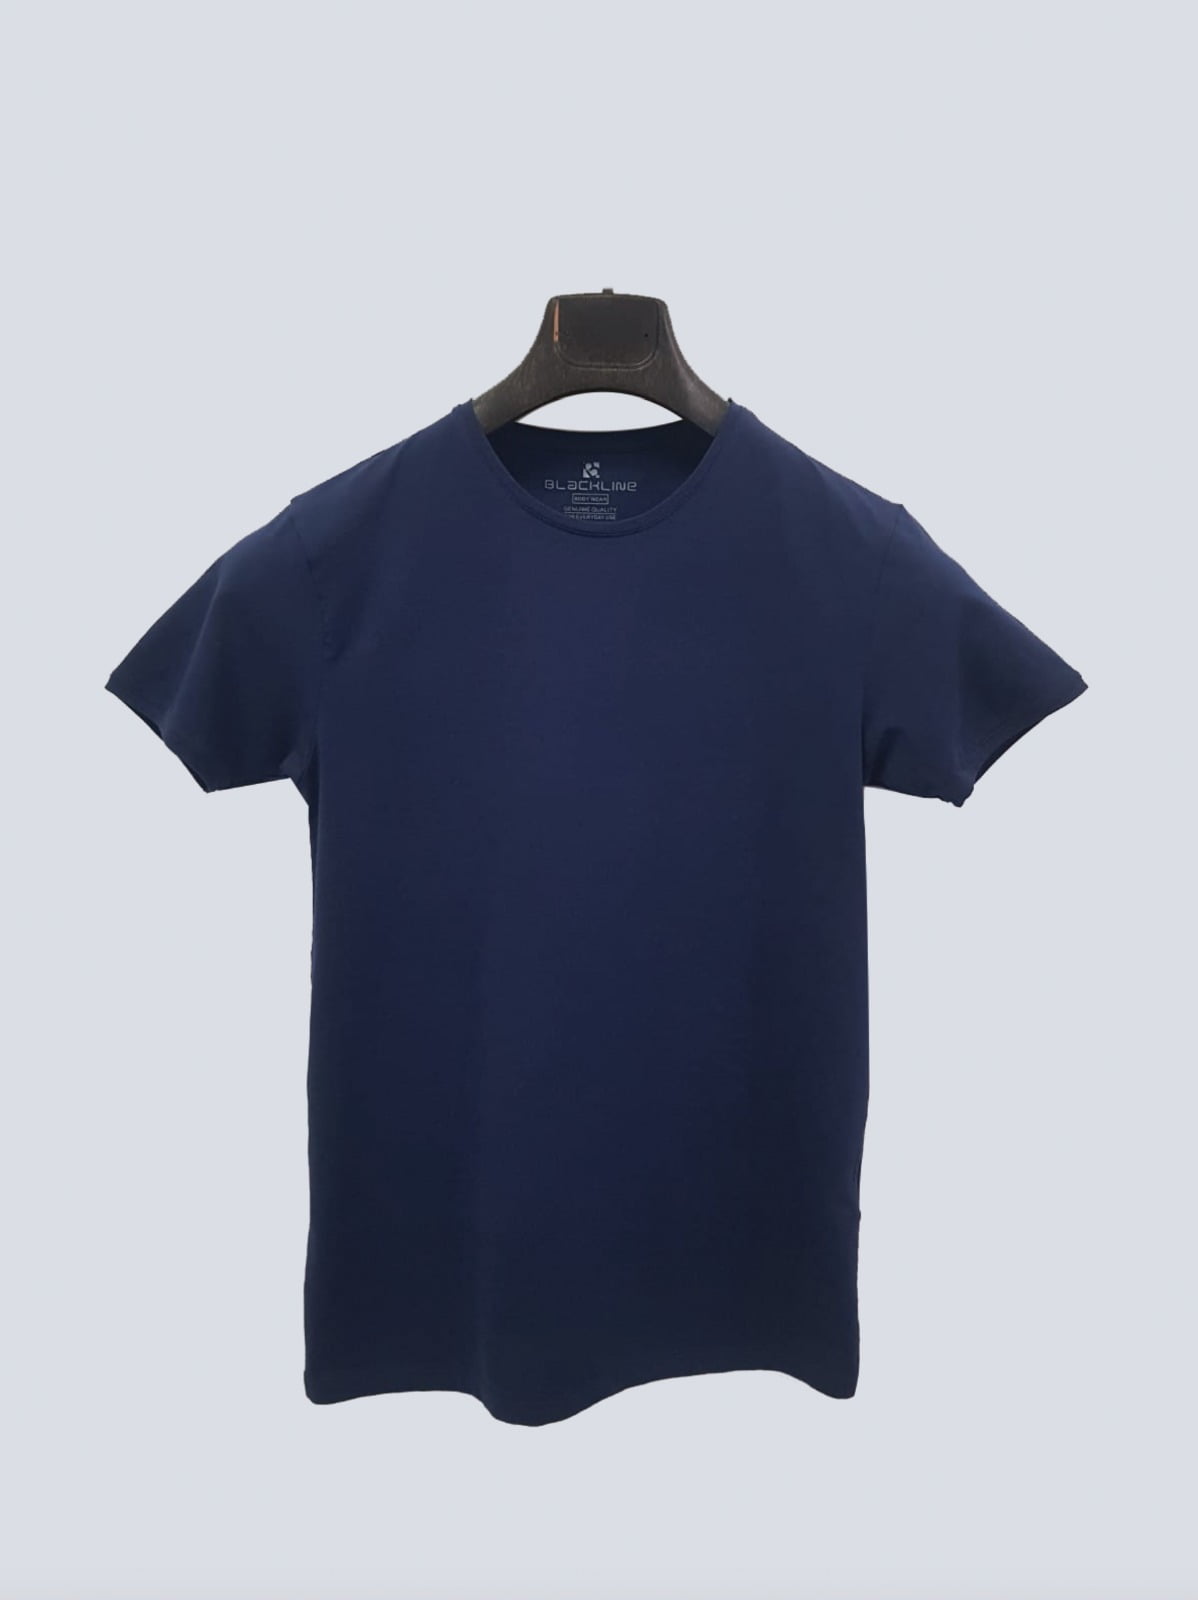 T-Shirt Body Round Neck Short Sleeve - Dark Blue - Black Line